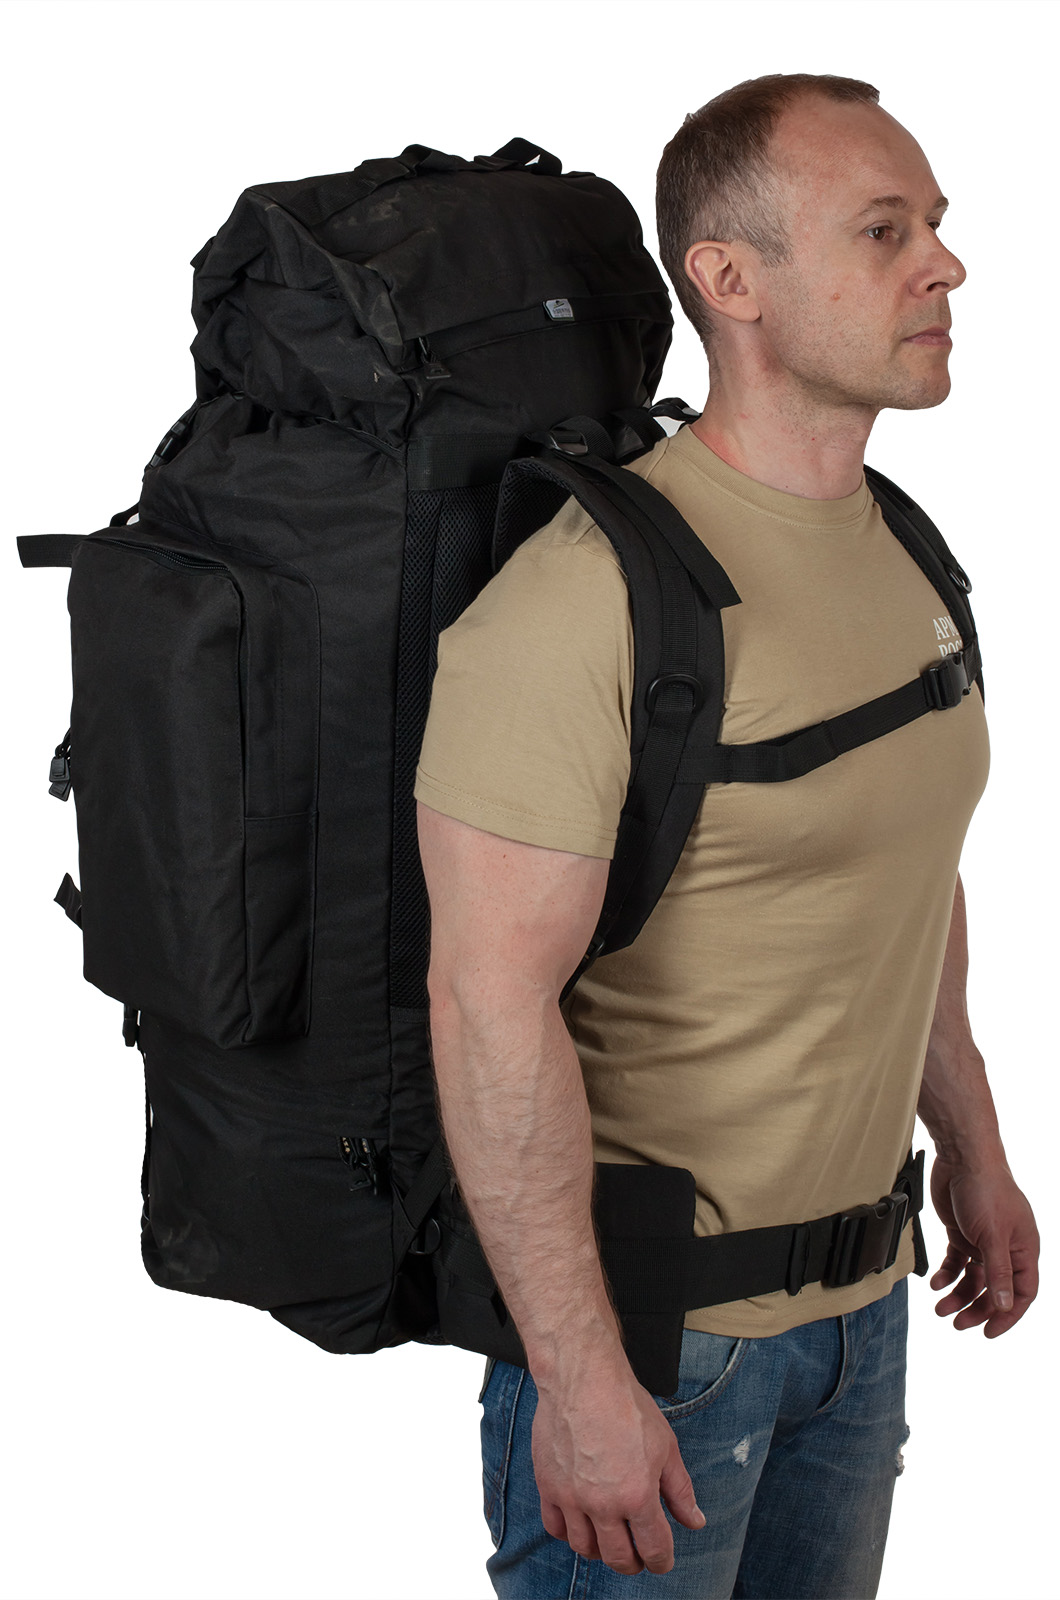 Многодневный вместительный рюкзак с нашивкой Потомственный Казак (70 л) 